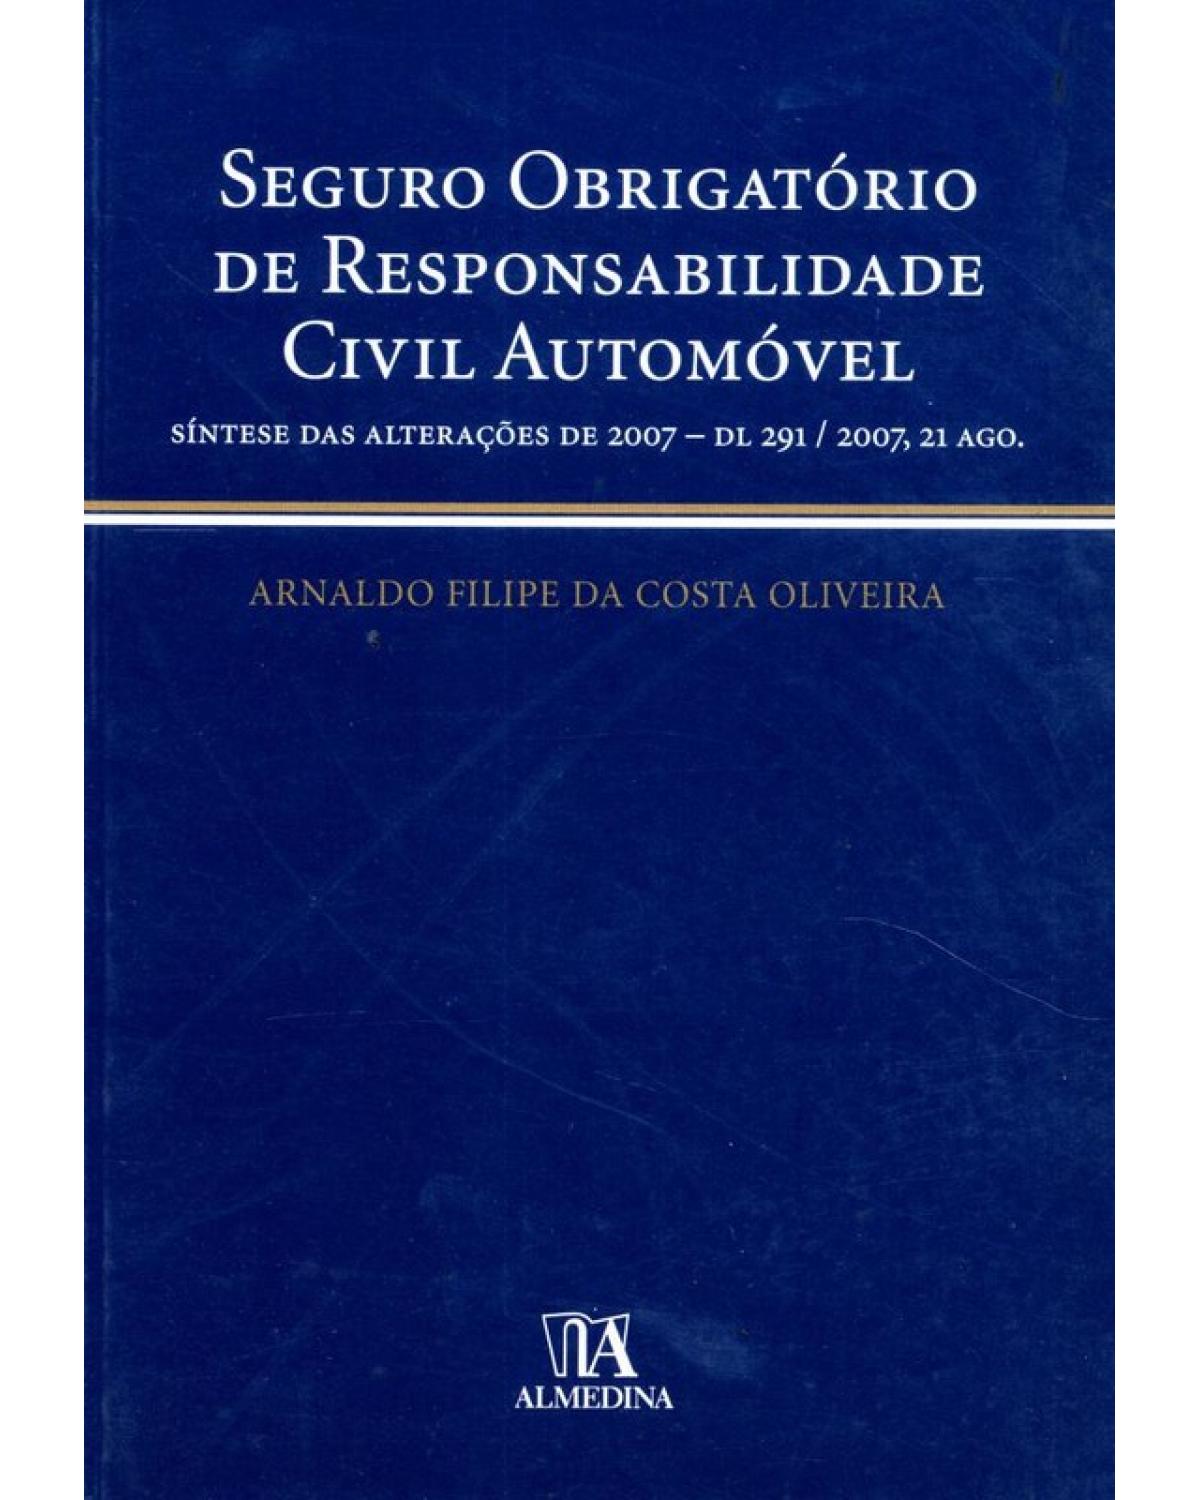 Seguro obrigatório de responsabilidade civil automóvel - síntese das alterações de 2007 - DL 291/2007, 21 ago. - 1ª Edição | 2008